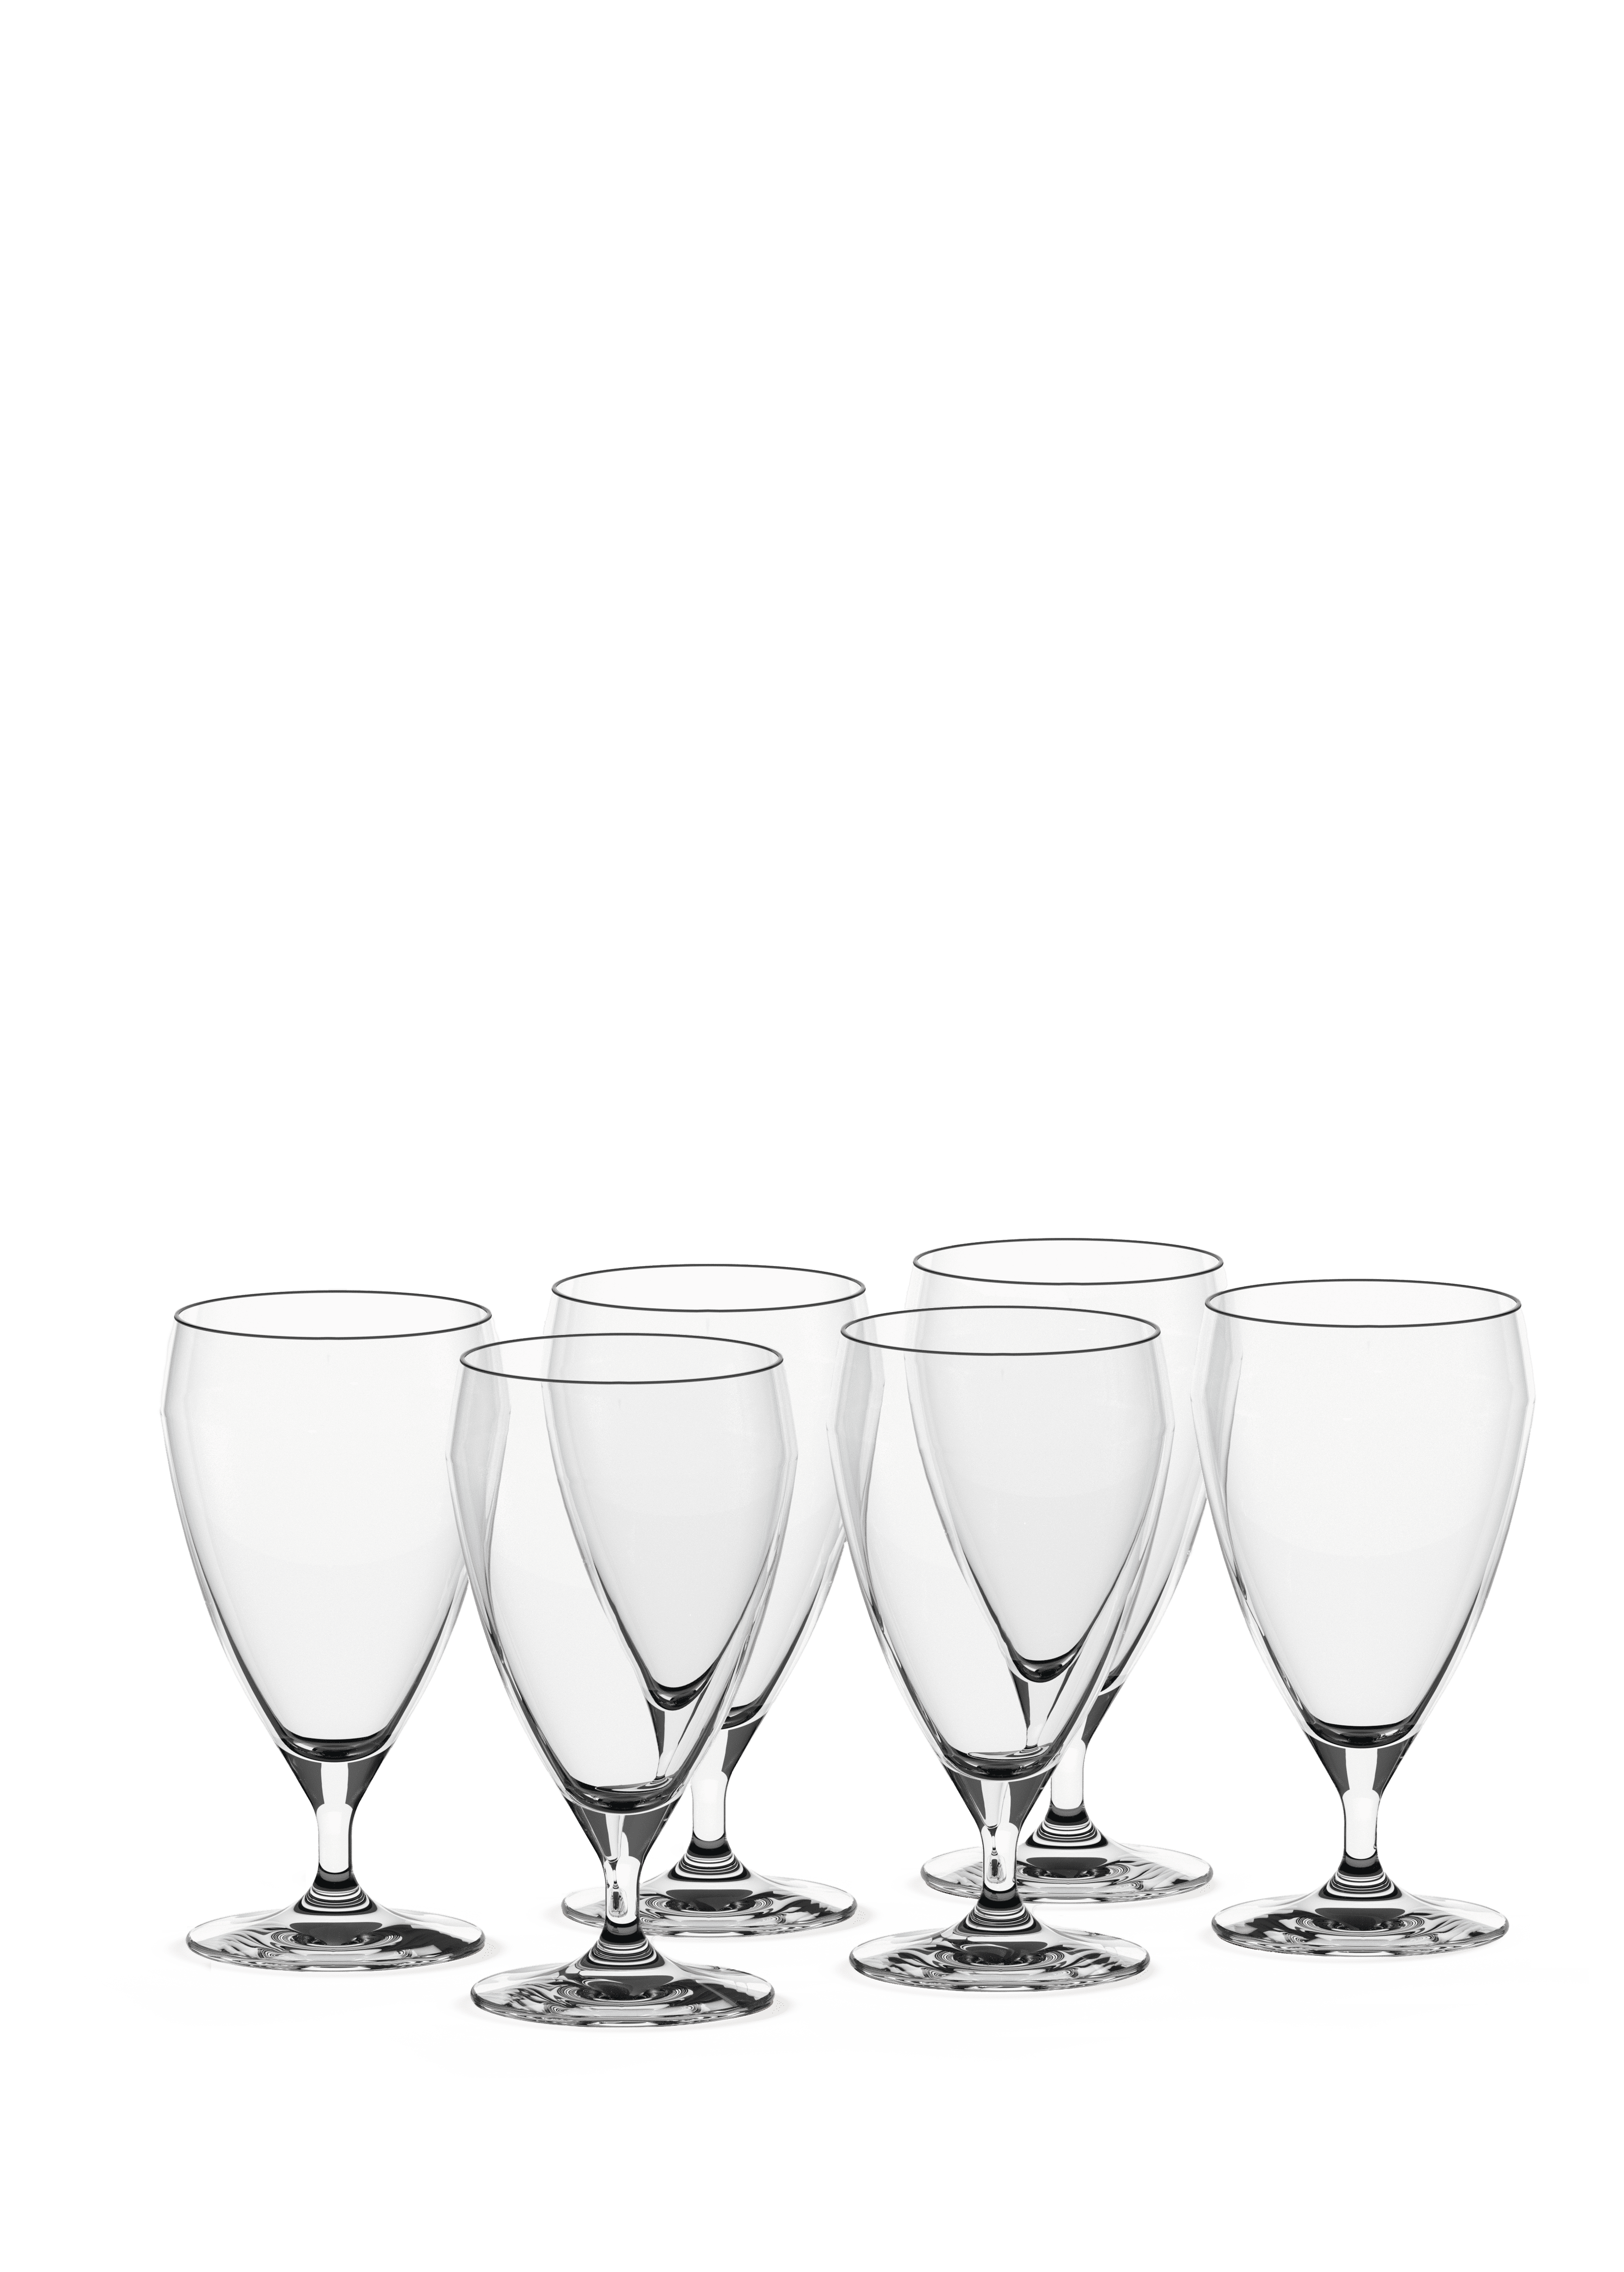 https://imagebank.rosendahl.com/cdn/xZctm5/Holmegaard-Perfection-Beer-Glass-Clear-4402023-xZctm5.png?d=6838